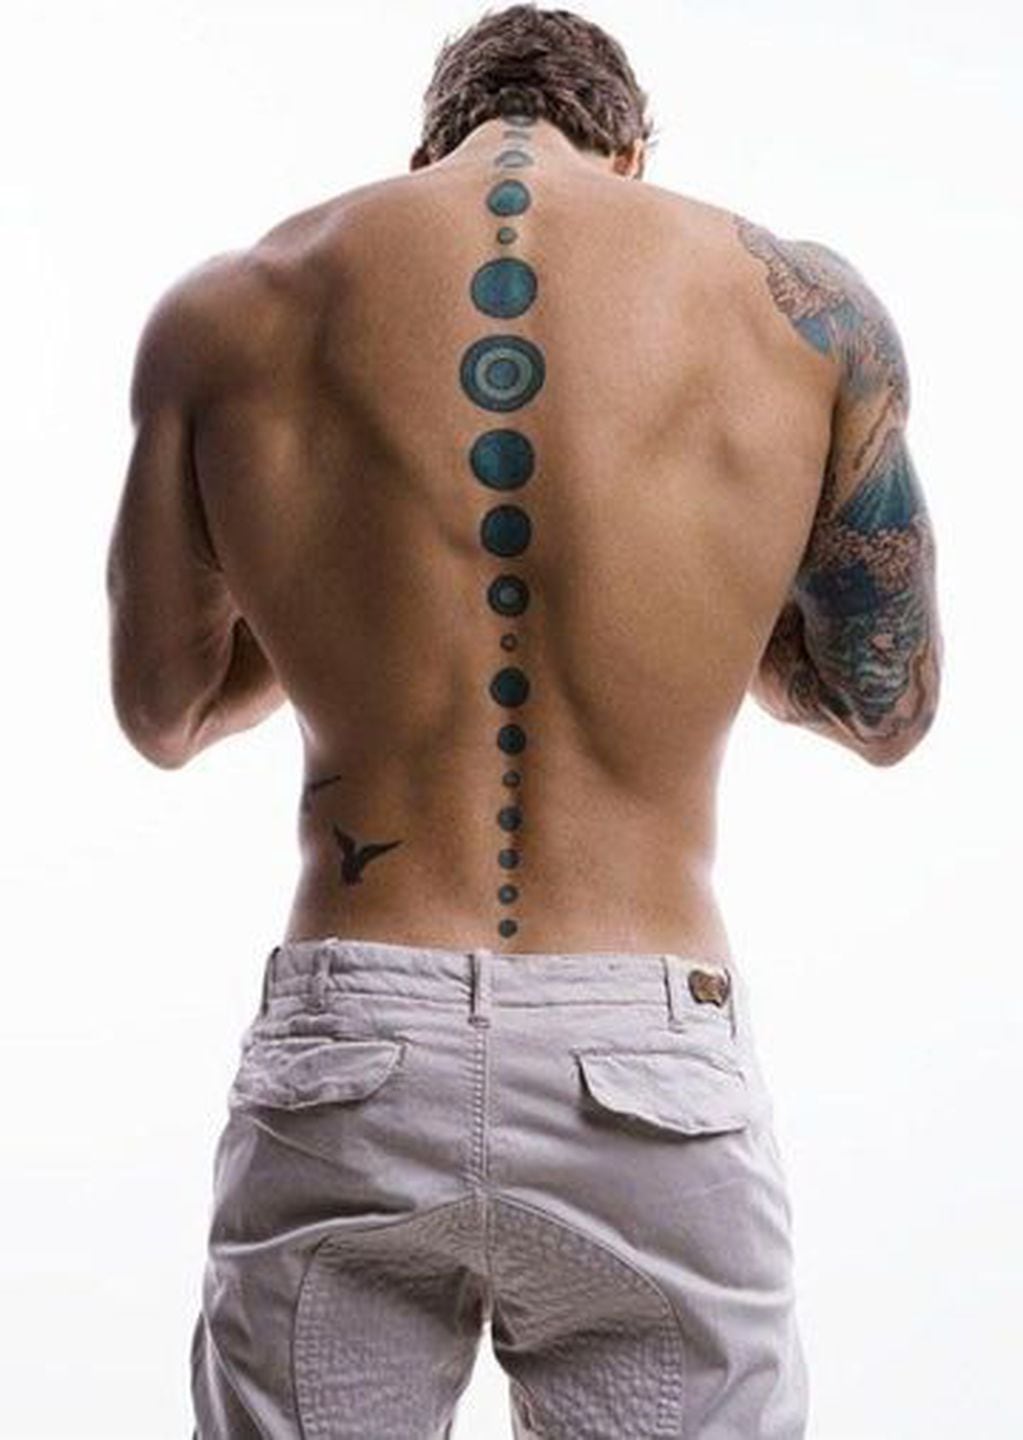 Las zonas del cuerpo más sexys para tatuarse